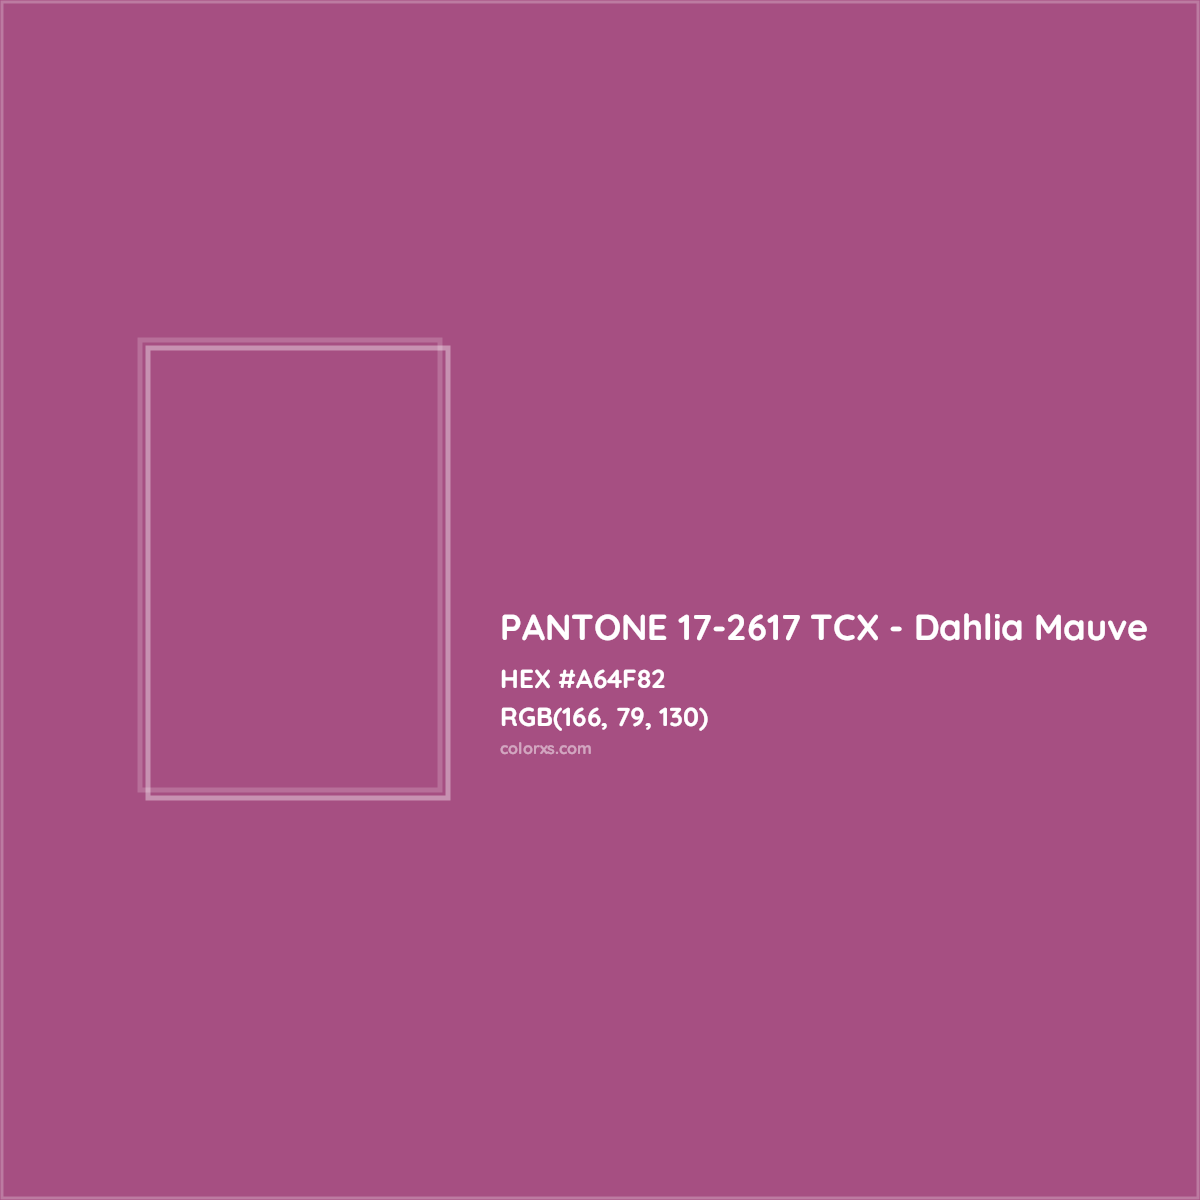 HEX #A64F82 PANTONE 17-2617 TCX - Dahlia Mauve CMS Pantone TCX - Color Code